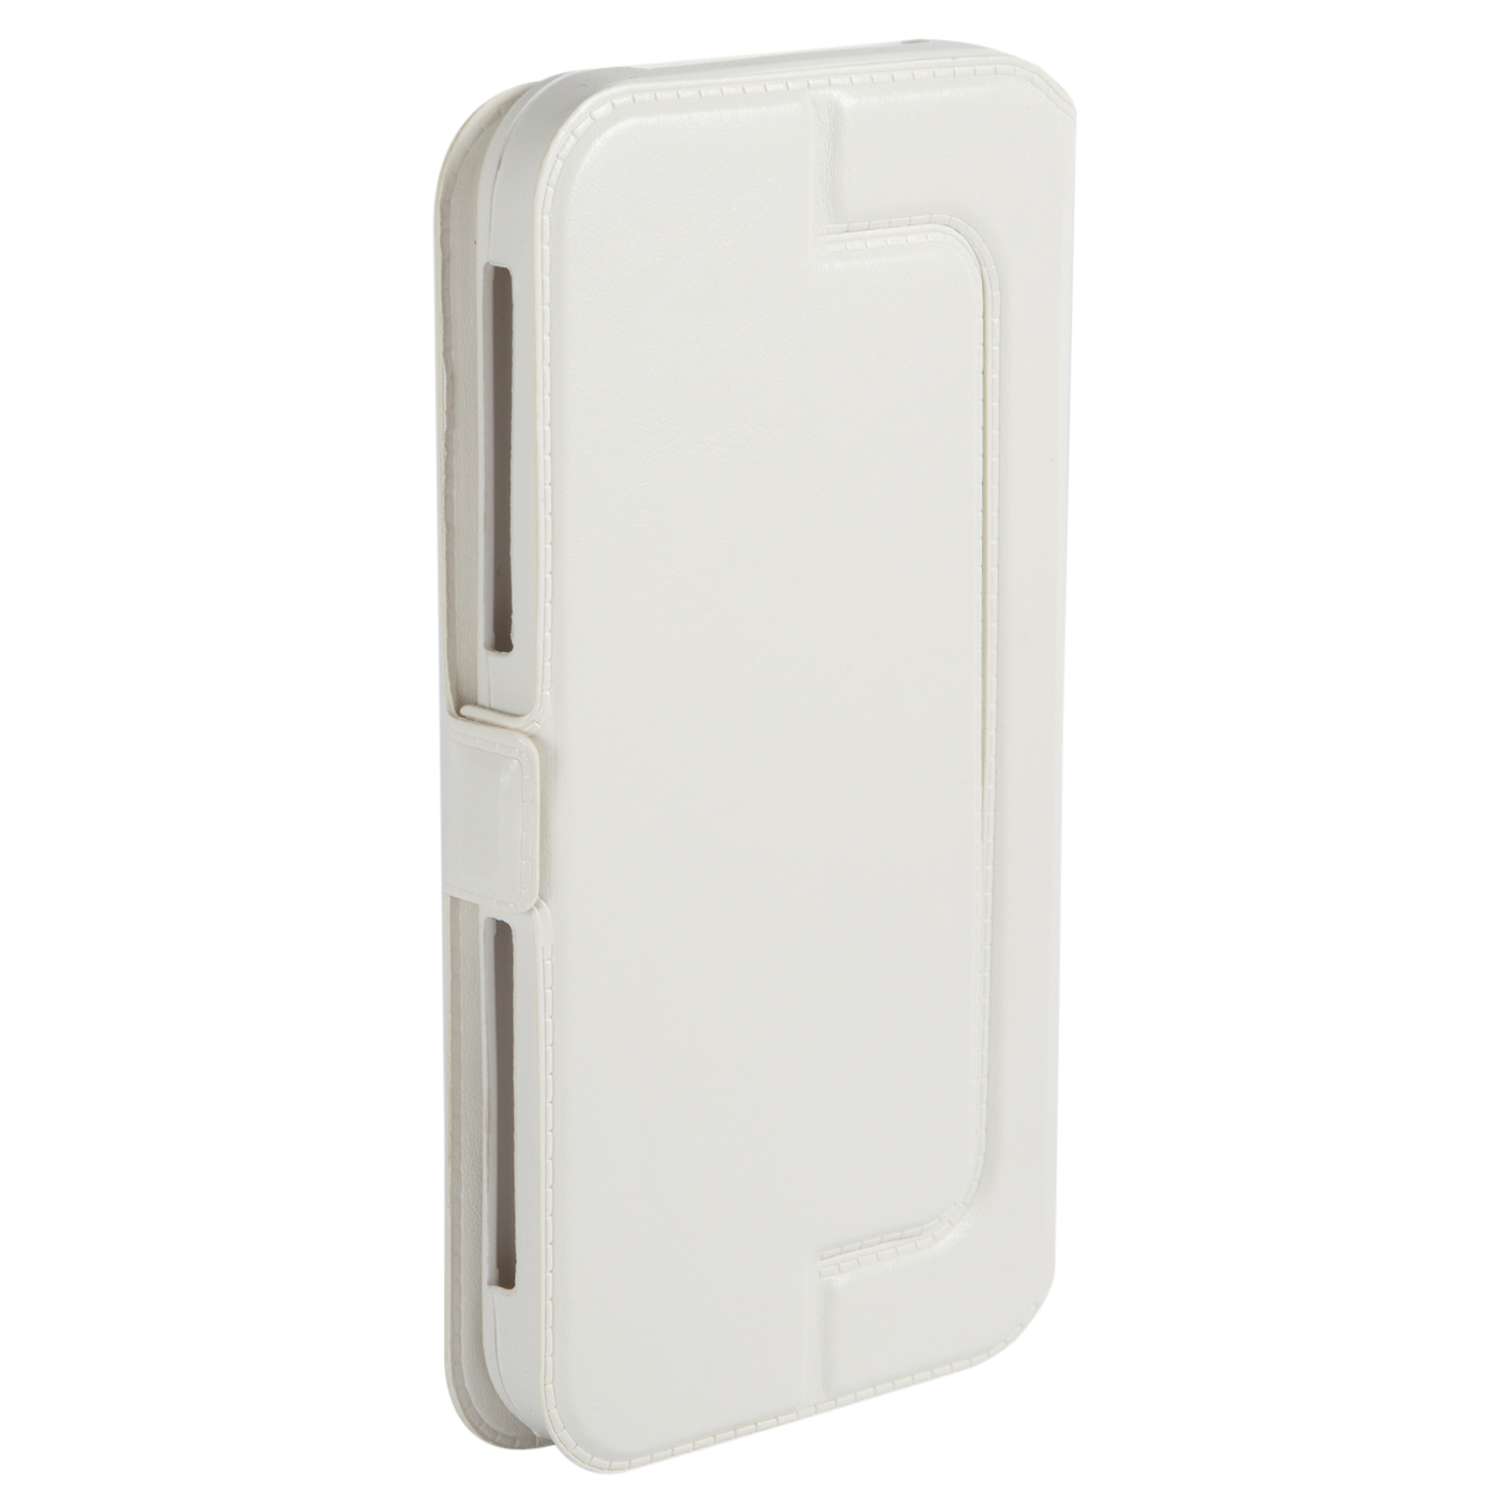 Чехол универсальный iBox Universal Slide для телефонов 4.2-5 дюймов белый - фото 4